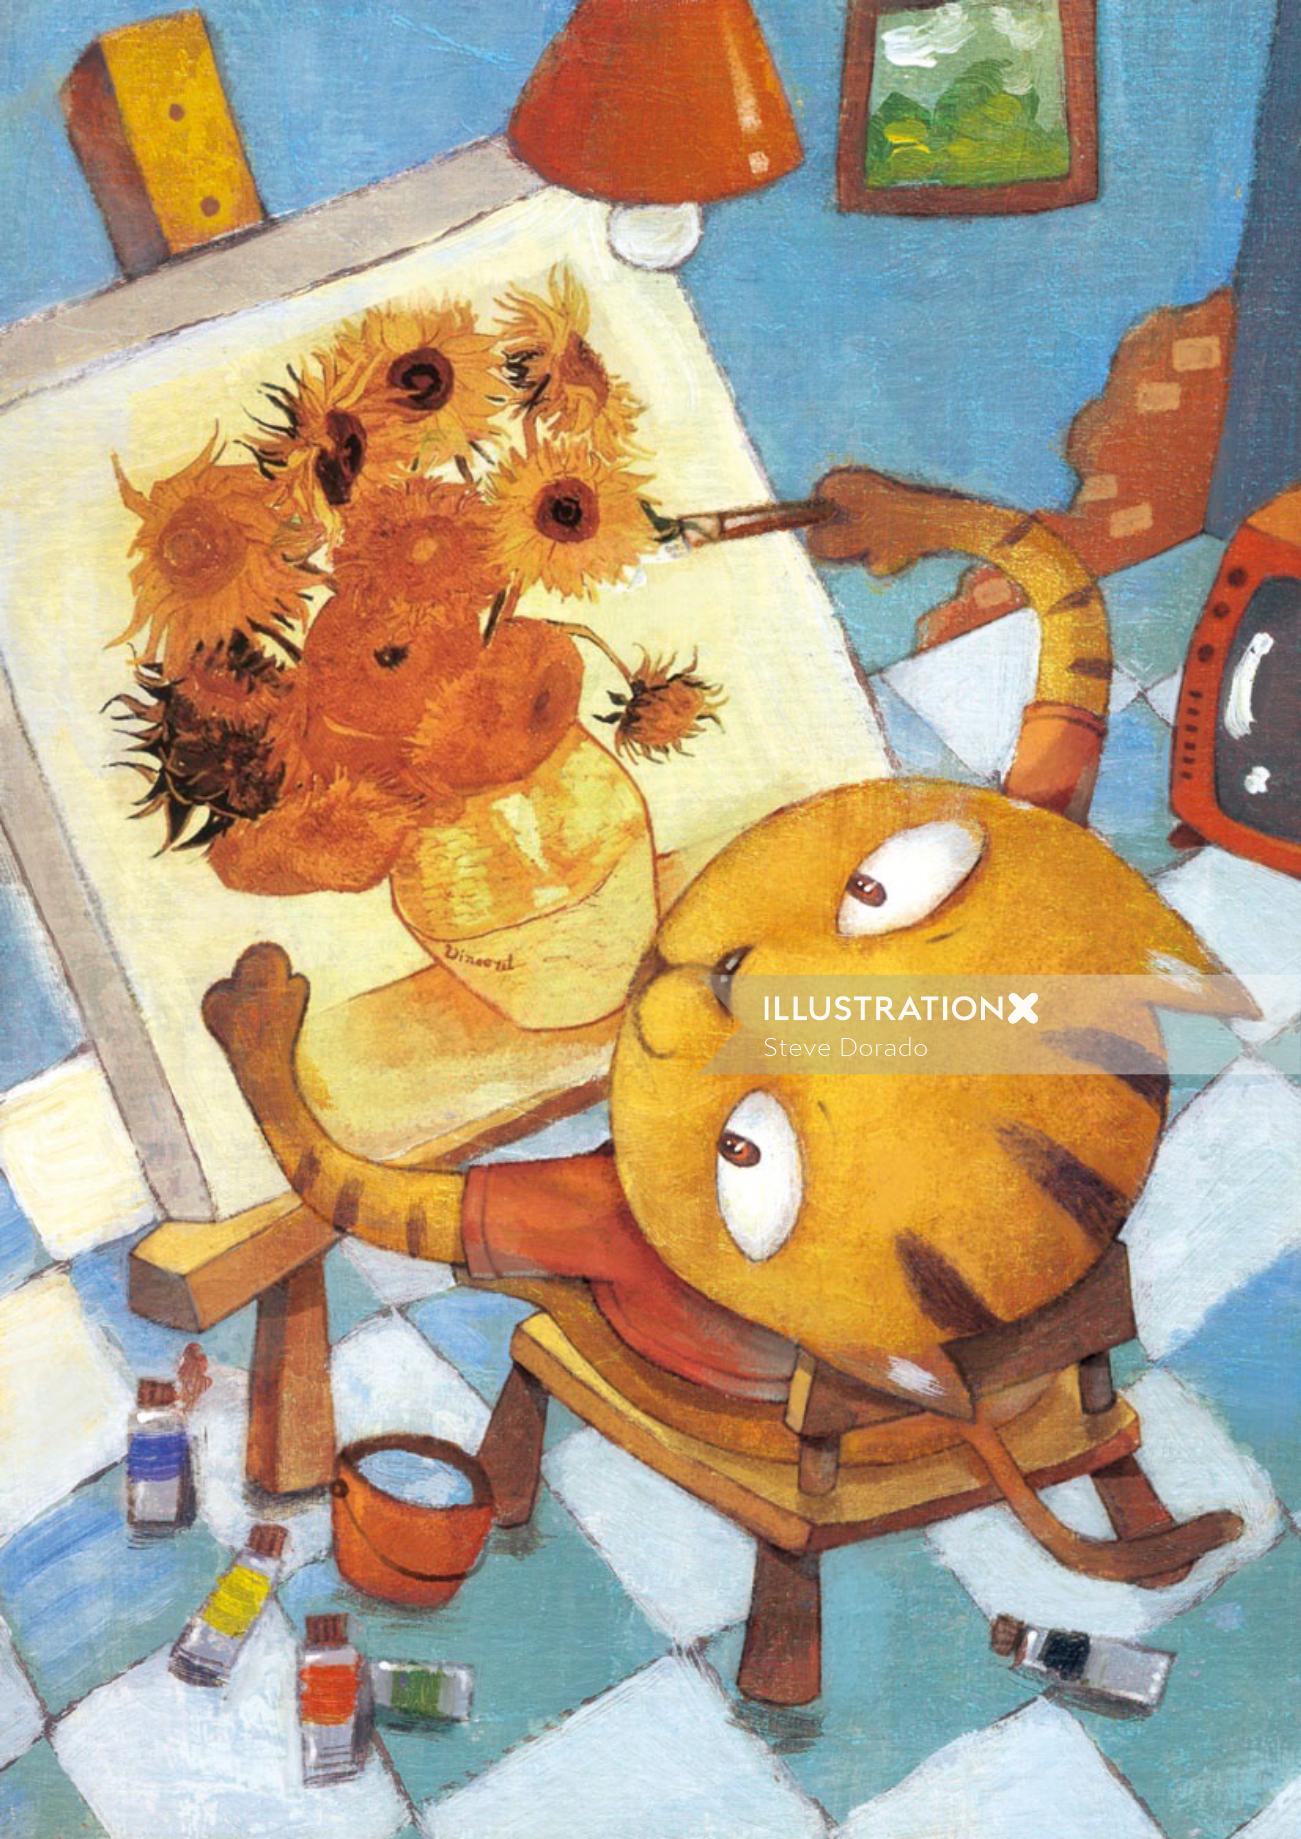 animal illustration for children book